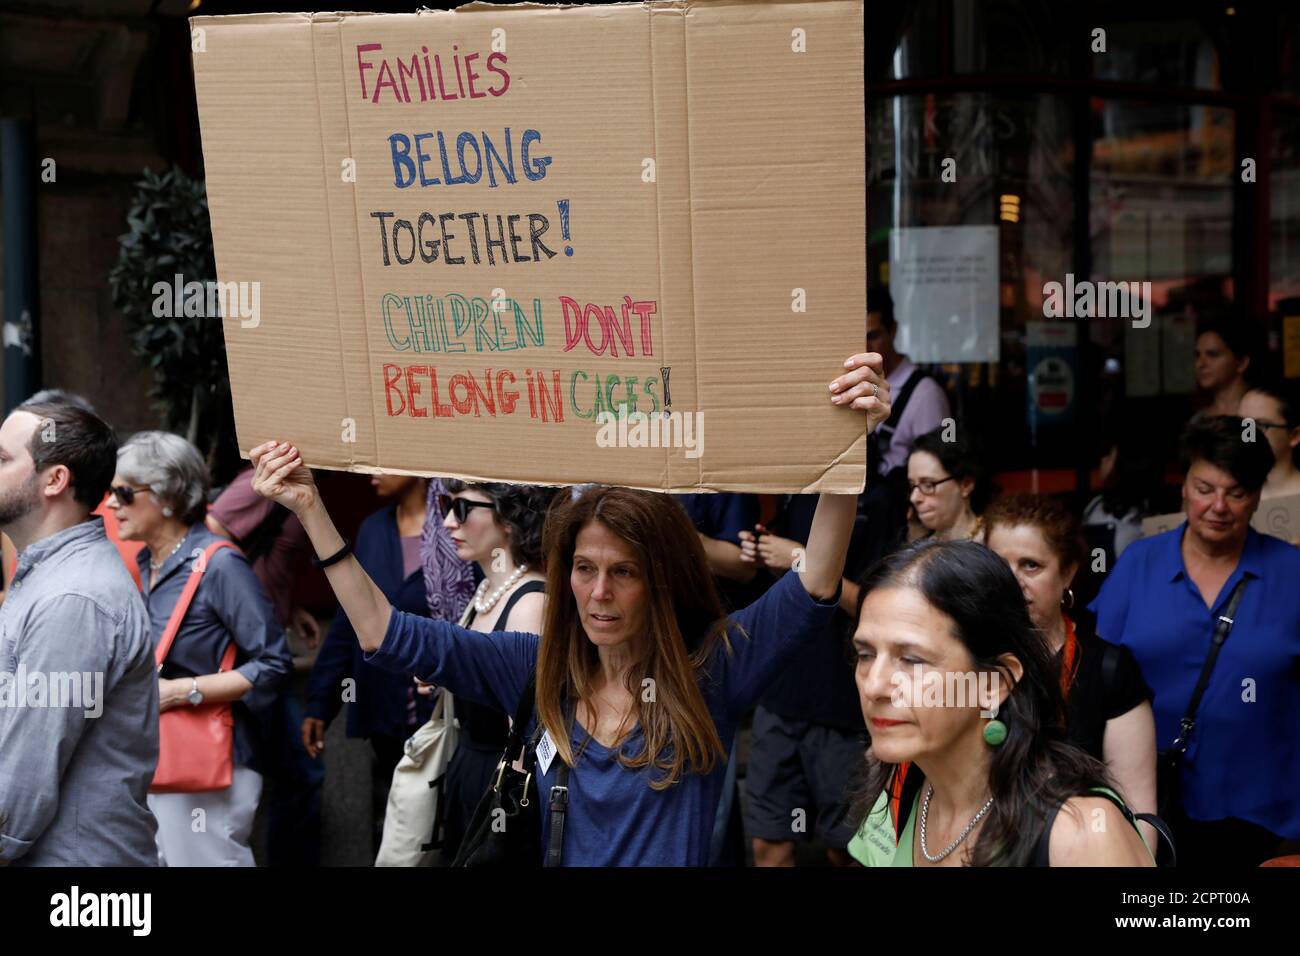 Menschen protestieren gegen die Politik der Trump-Regierung, eingewanderte Familien, die der illegalen Einreise verdächtigt werden, in New York, NY, USA, 20. Juni 2018 zu trennen. REUTERS/Brendan McDermid Stockfoto